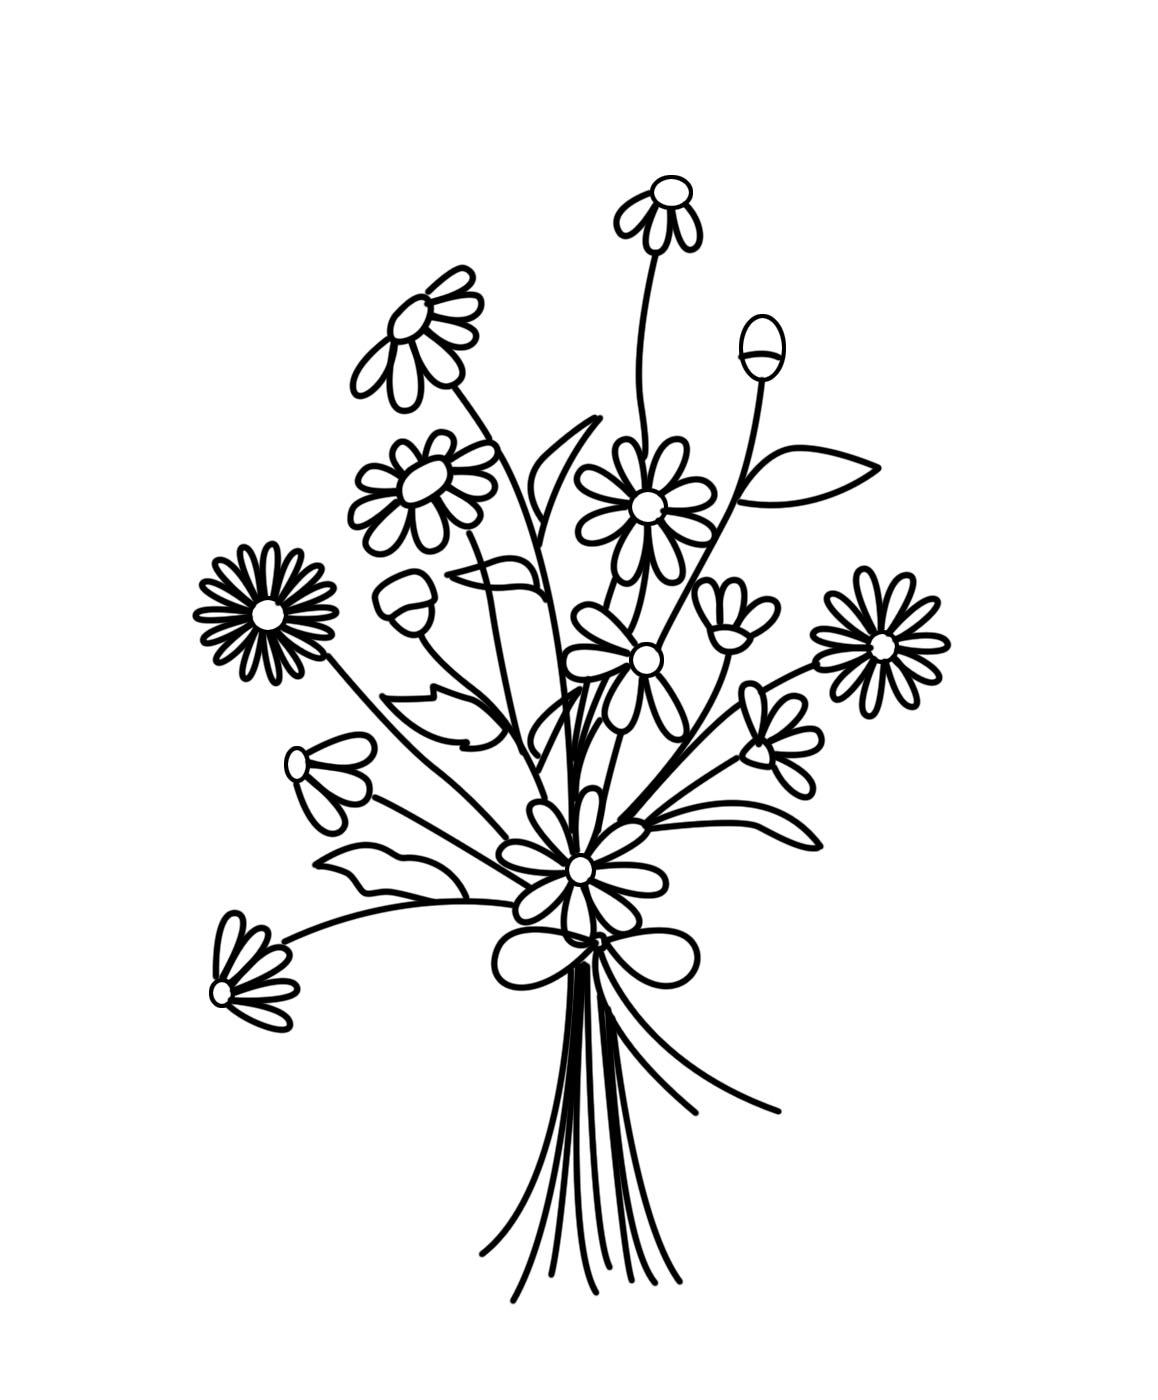 Xem hơn 100 ảnh về hình vẽ mẫu thêu hoa cúc - daotaonec